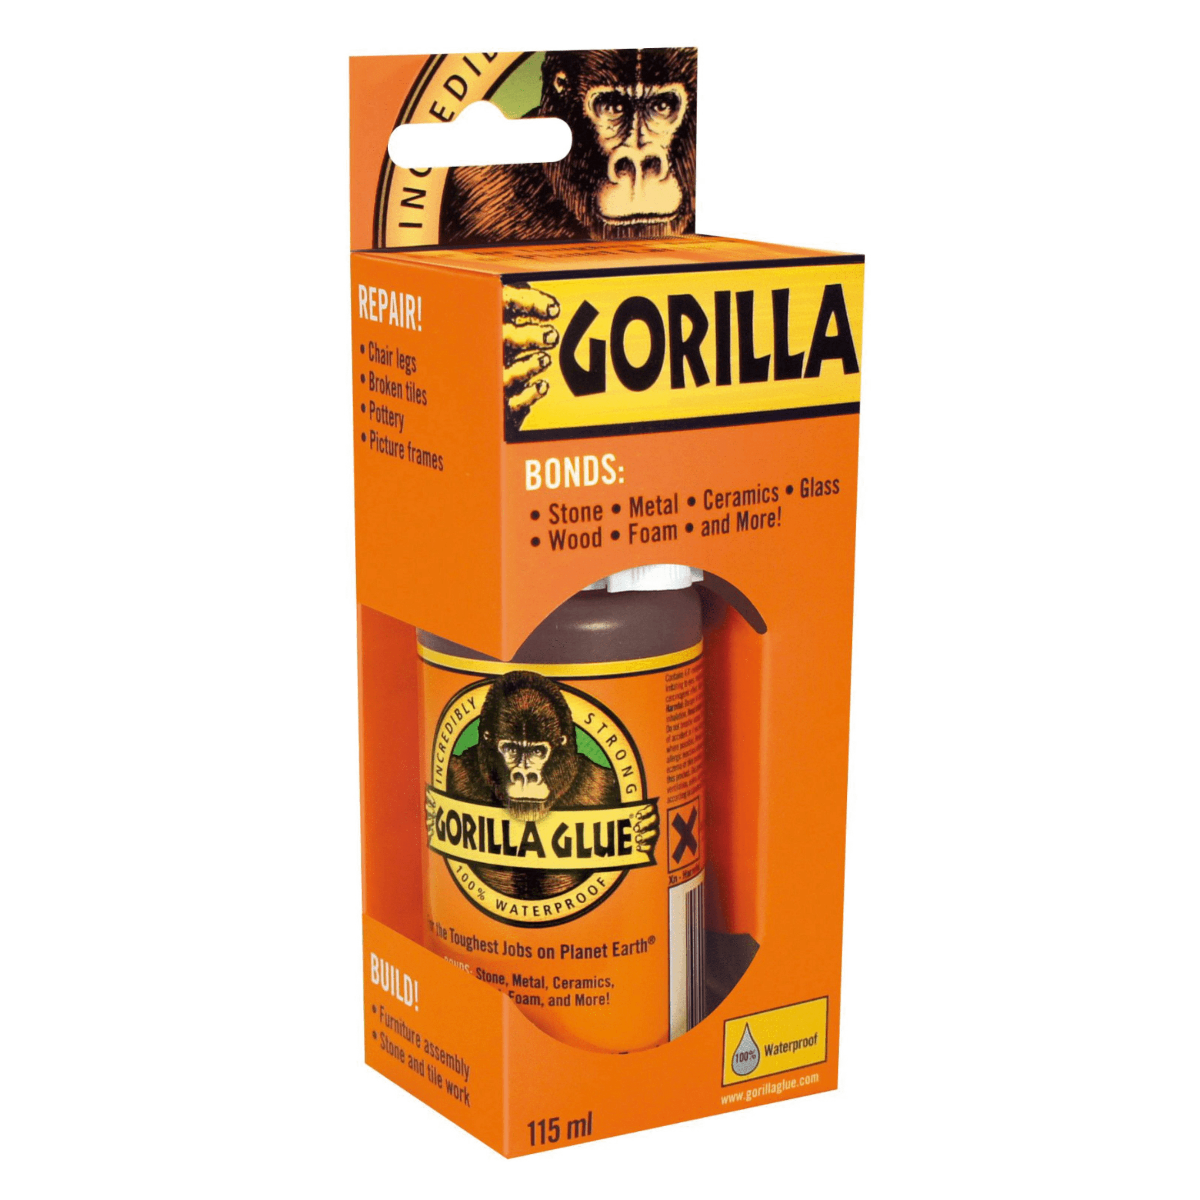 Gorilla Glue Brown PU Glue, 115ml